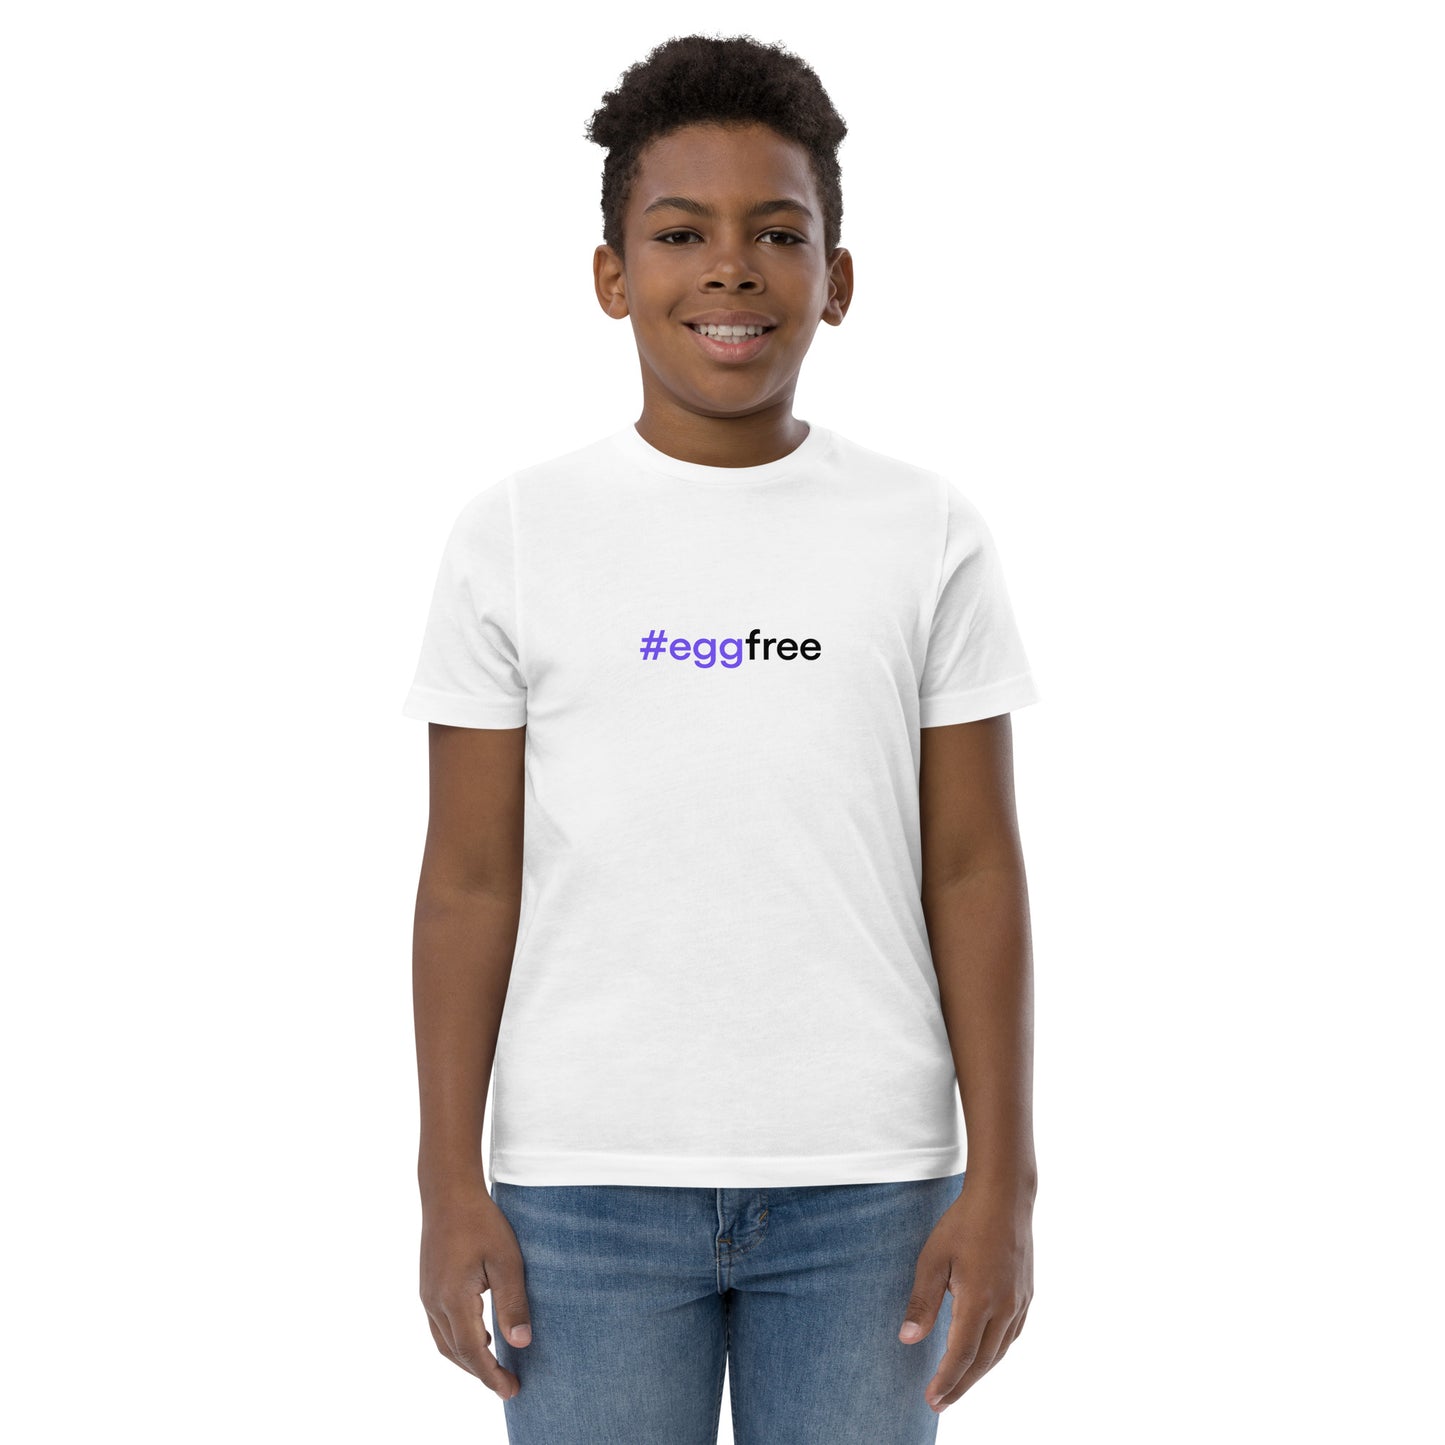 #eggfree | Youth jersey t-shirt